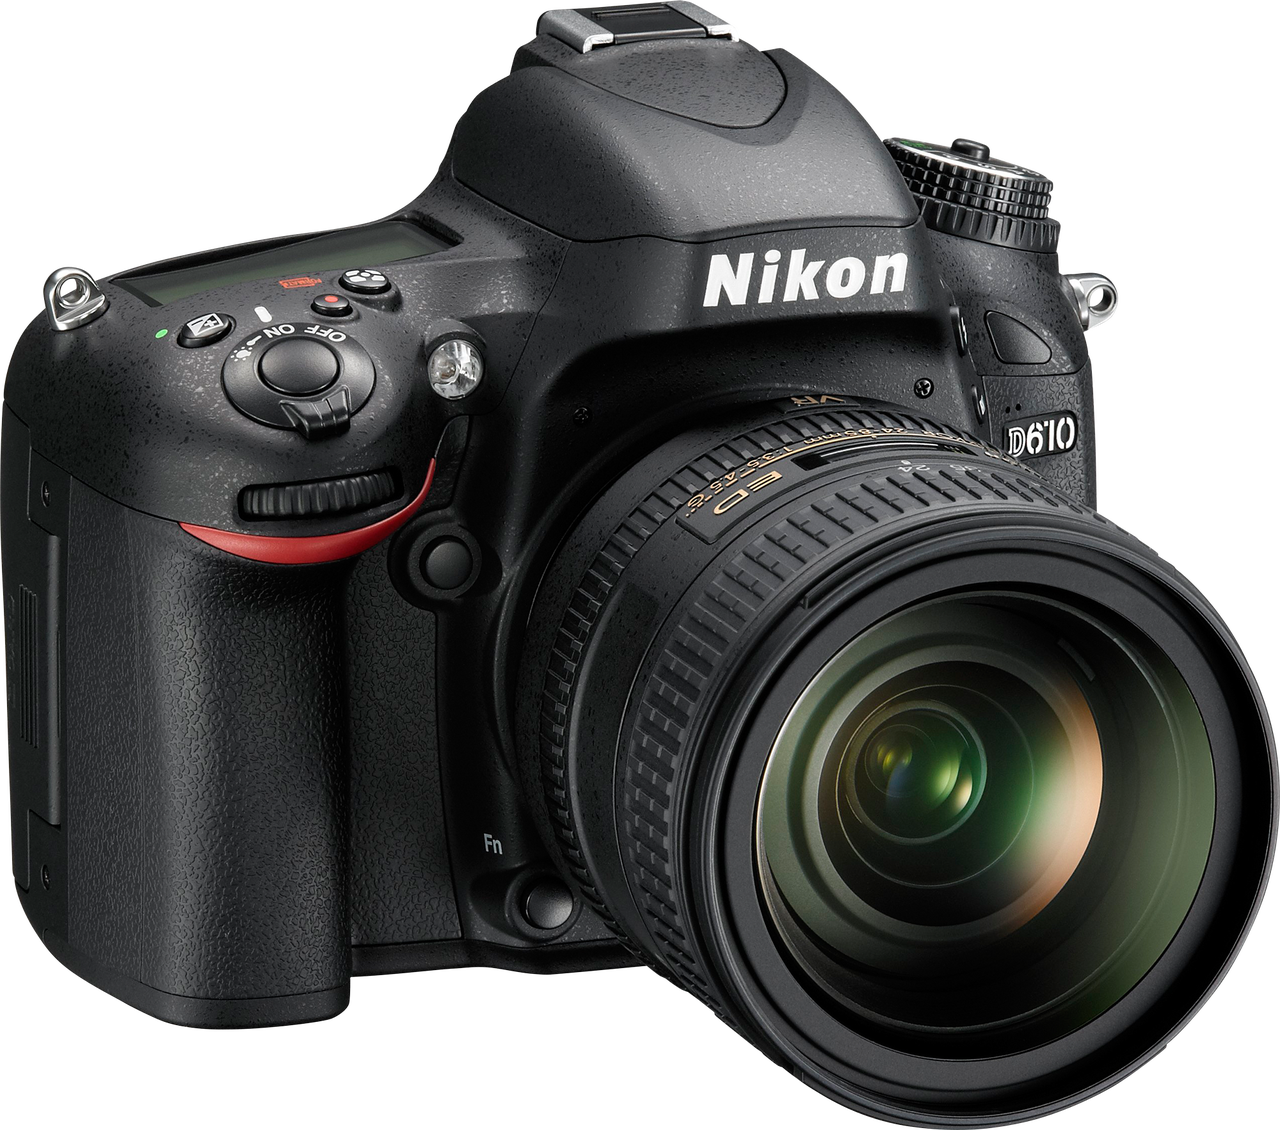 Nikon D610 pozwala na nagrywanie filmów w jakości Full HD i formatach FX oraz DX